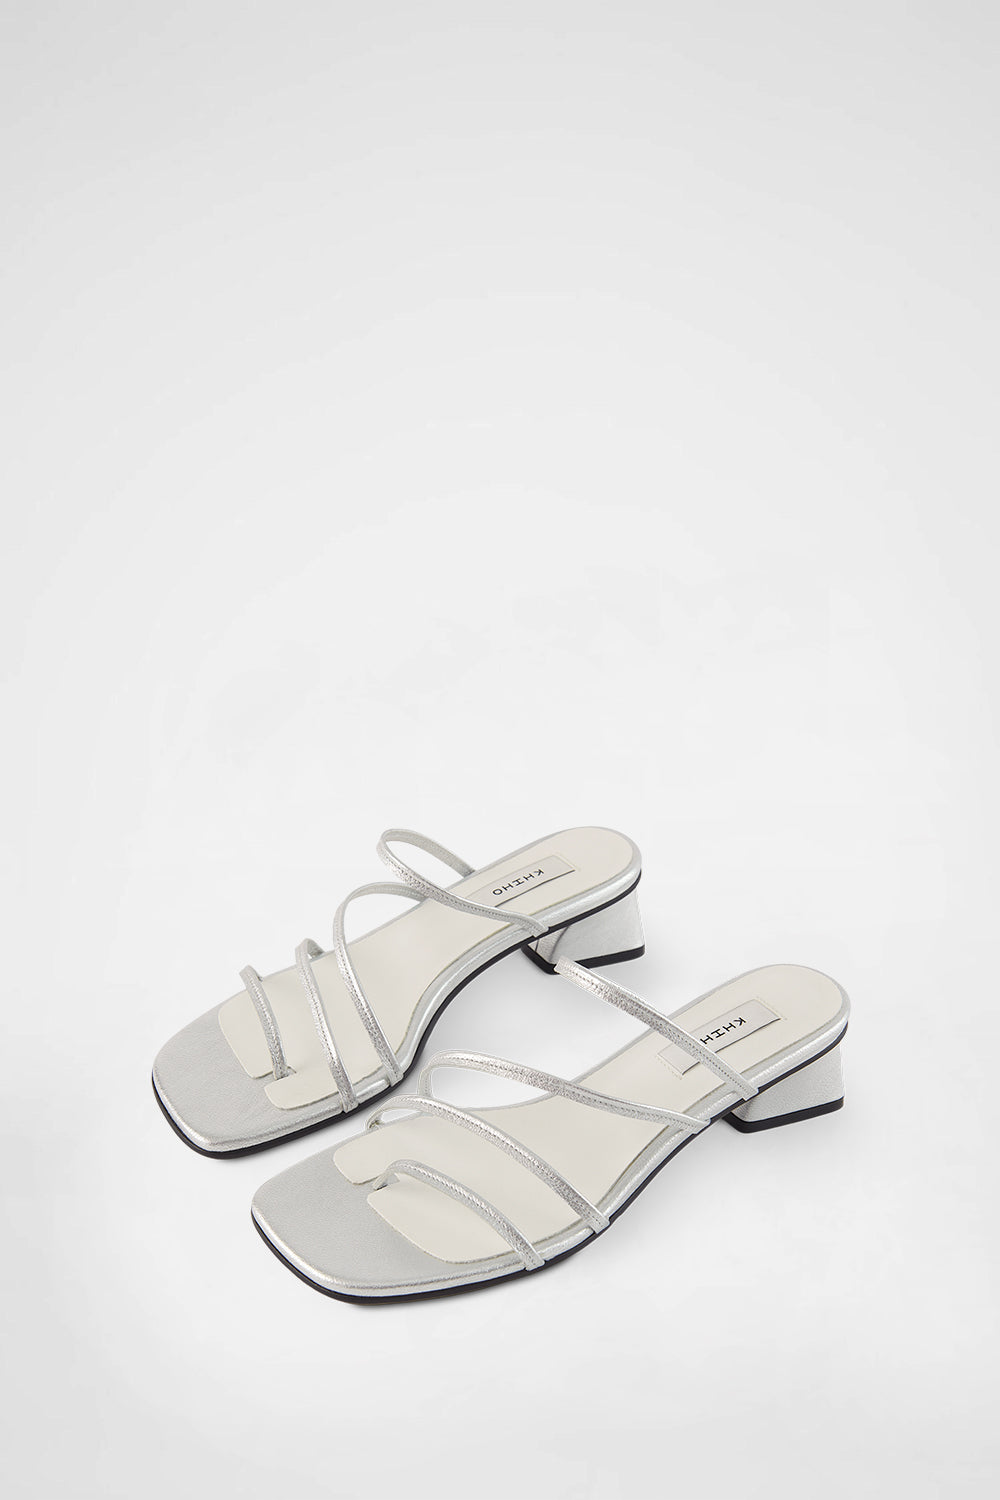 Cabu Sandals In Silver